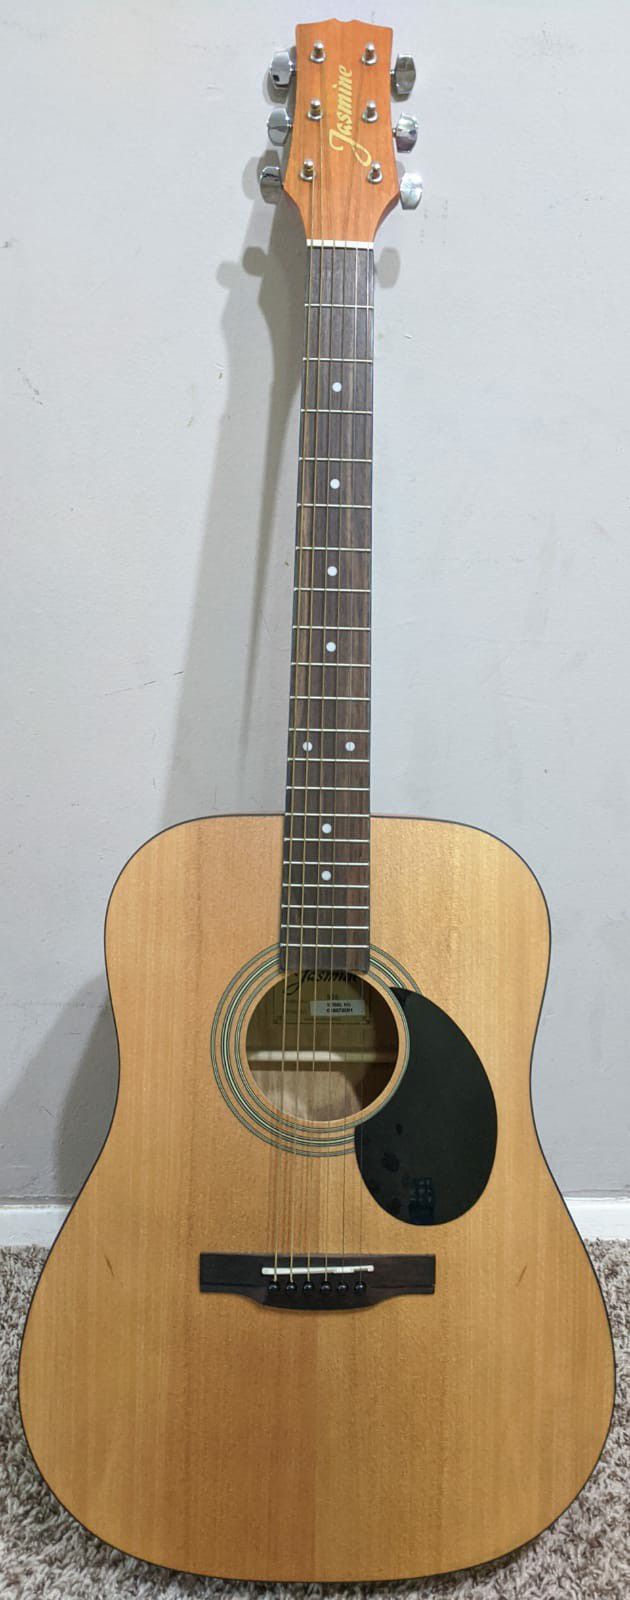 Jasmine S35 acoustic guitar + shoulder strap bag